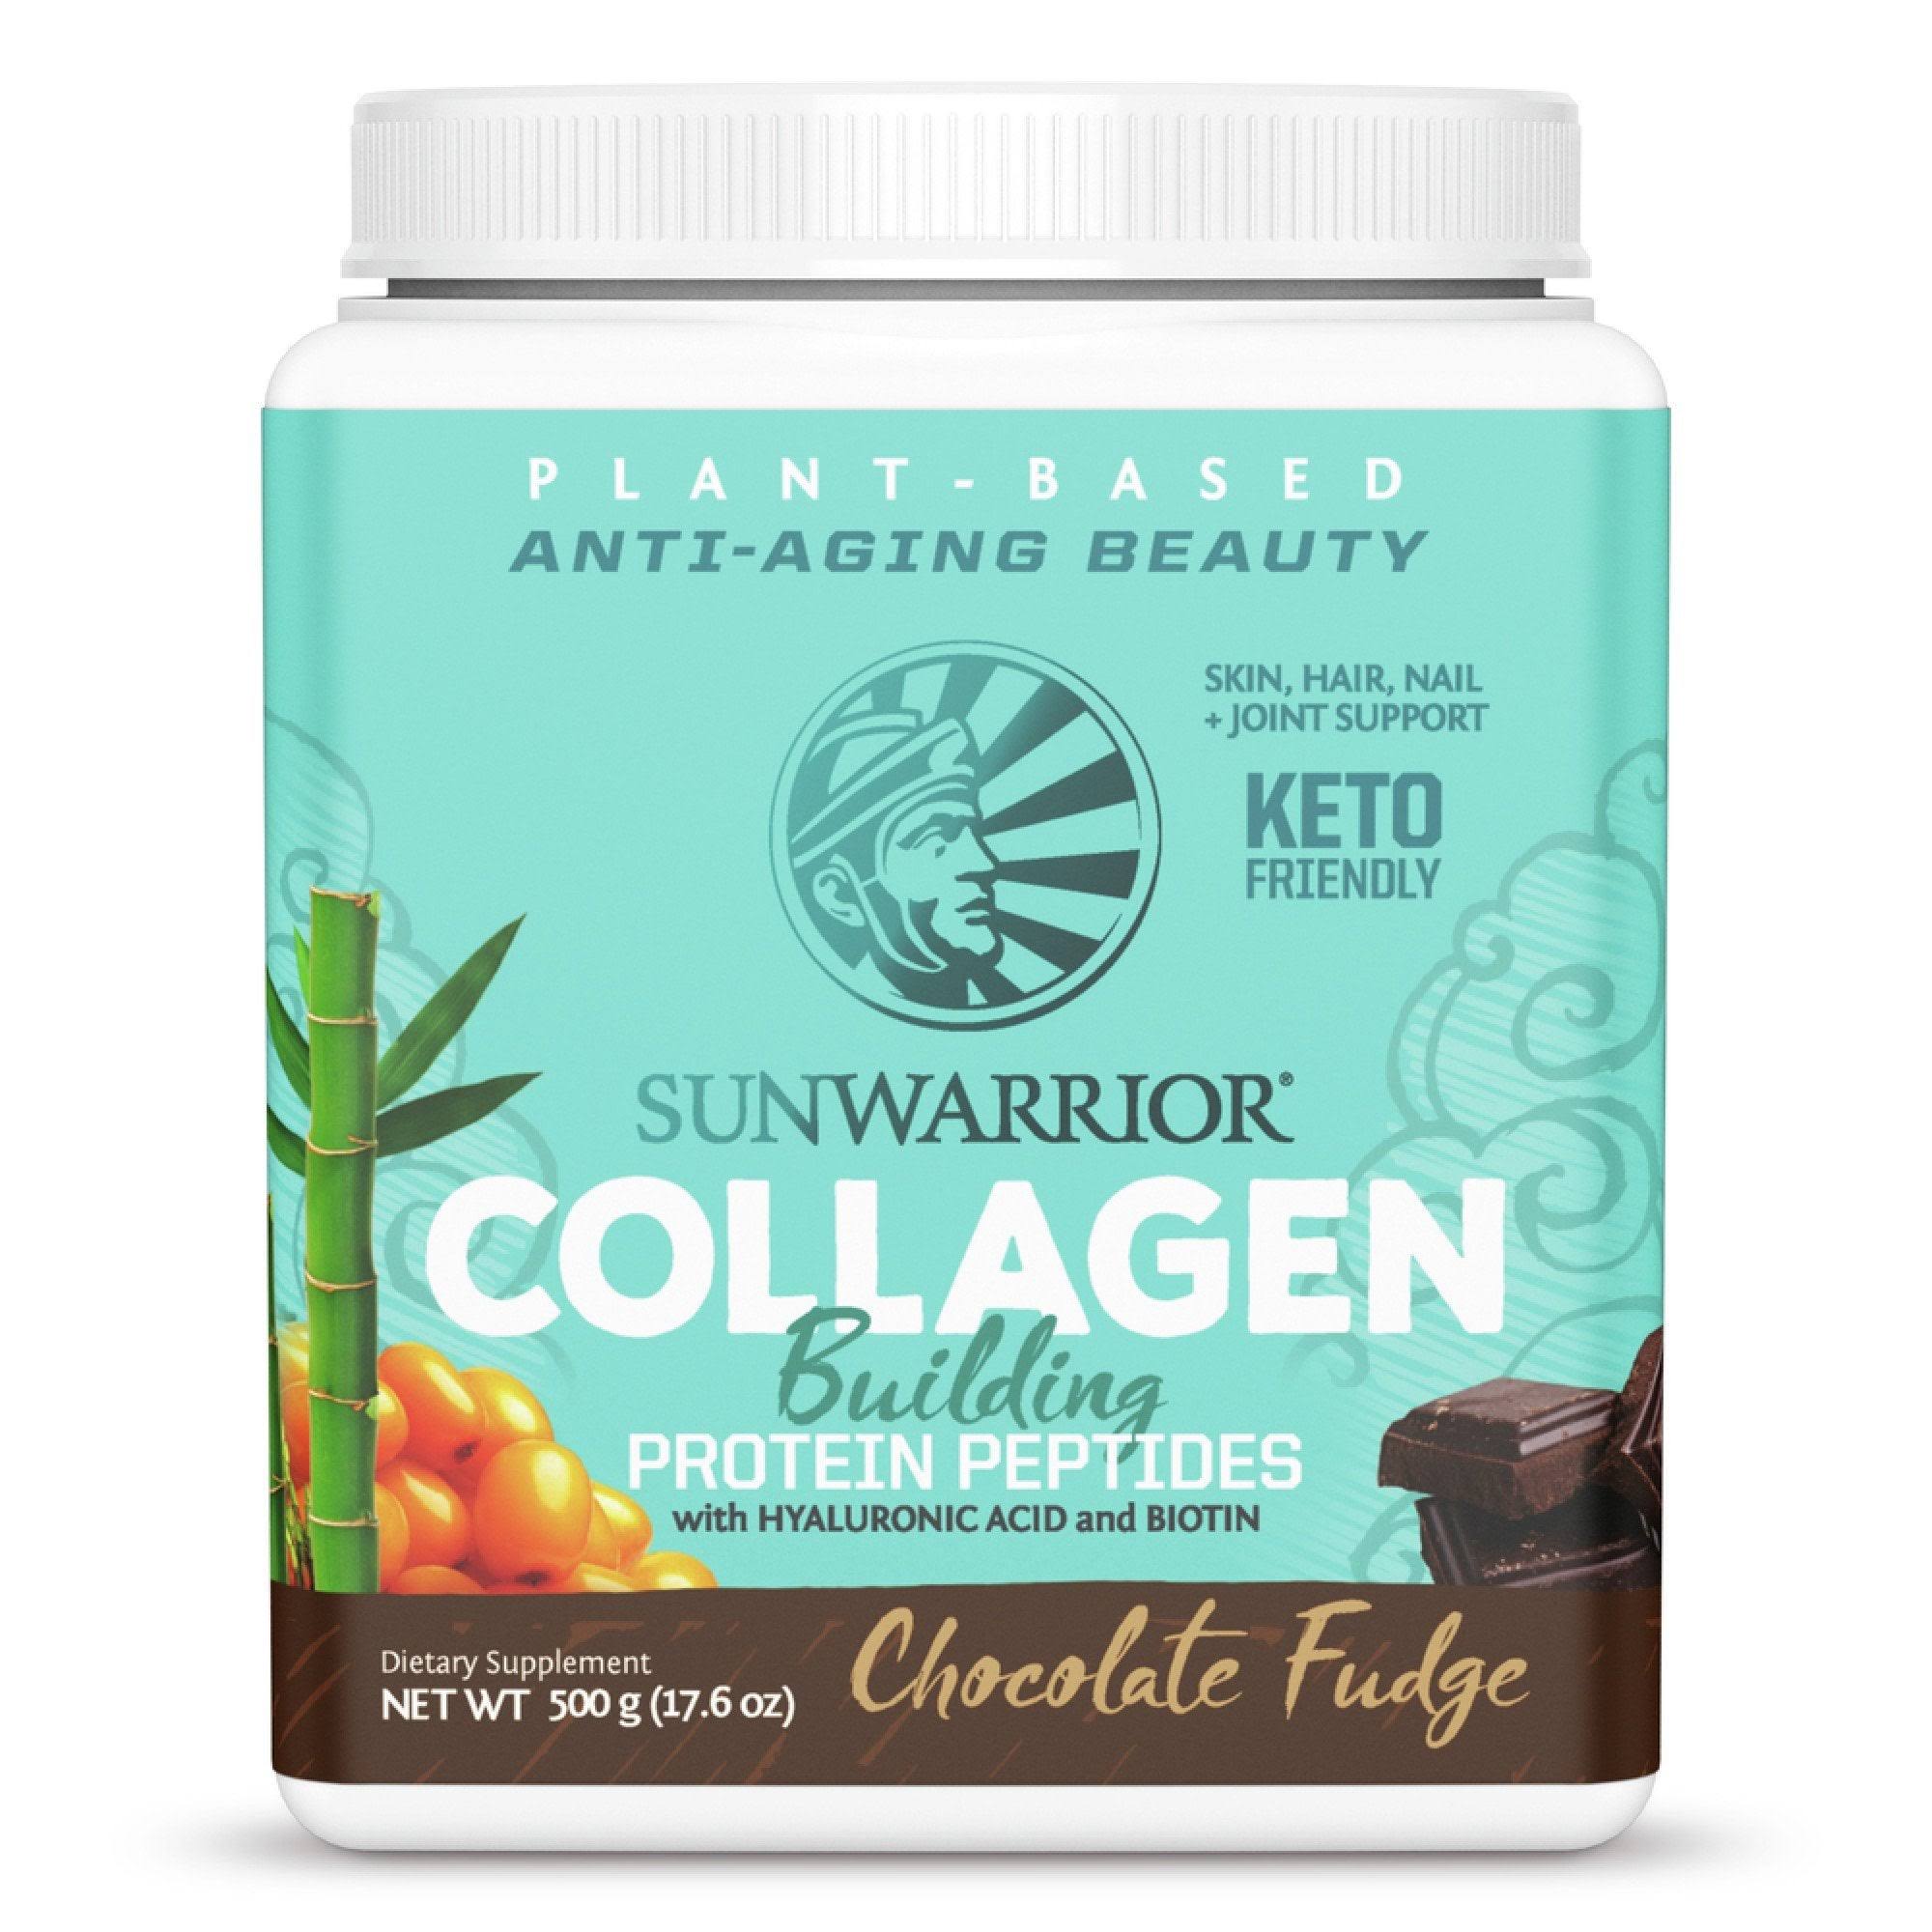 Sunwarrior Collagen Building Protein Peptides, Chocolate Fudge 17.6 Oz